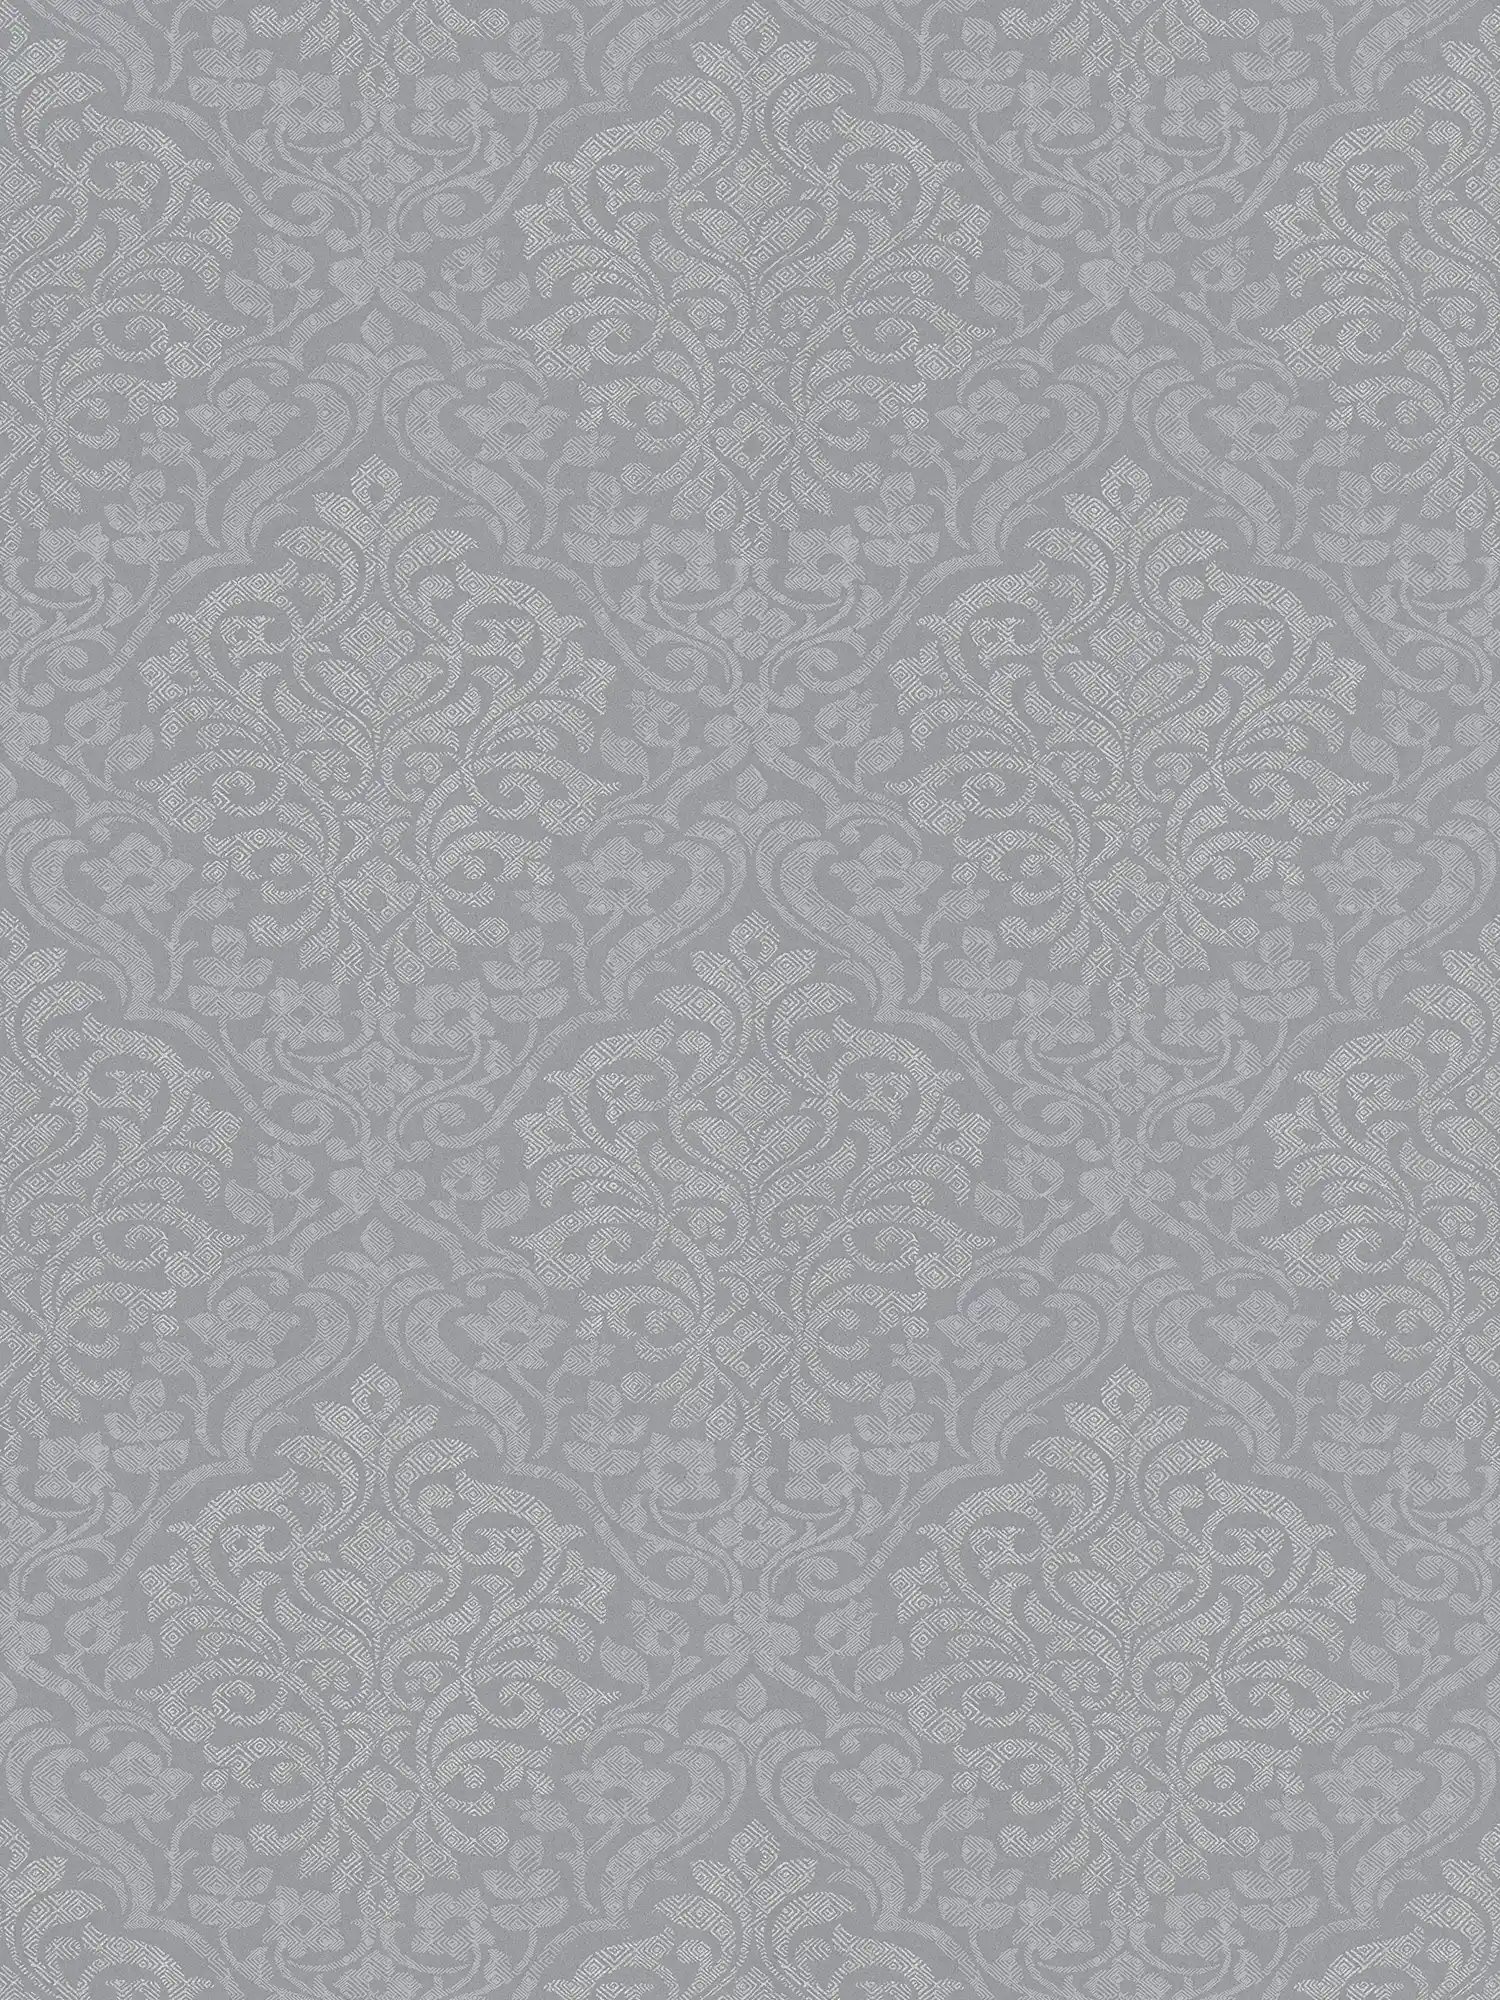 Carta da parati ornamentale floreale con motivo a rombi in stile etno - grigio, argento
